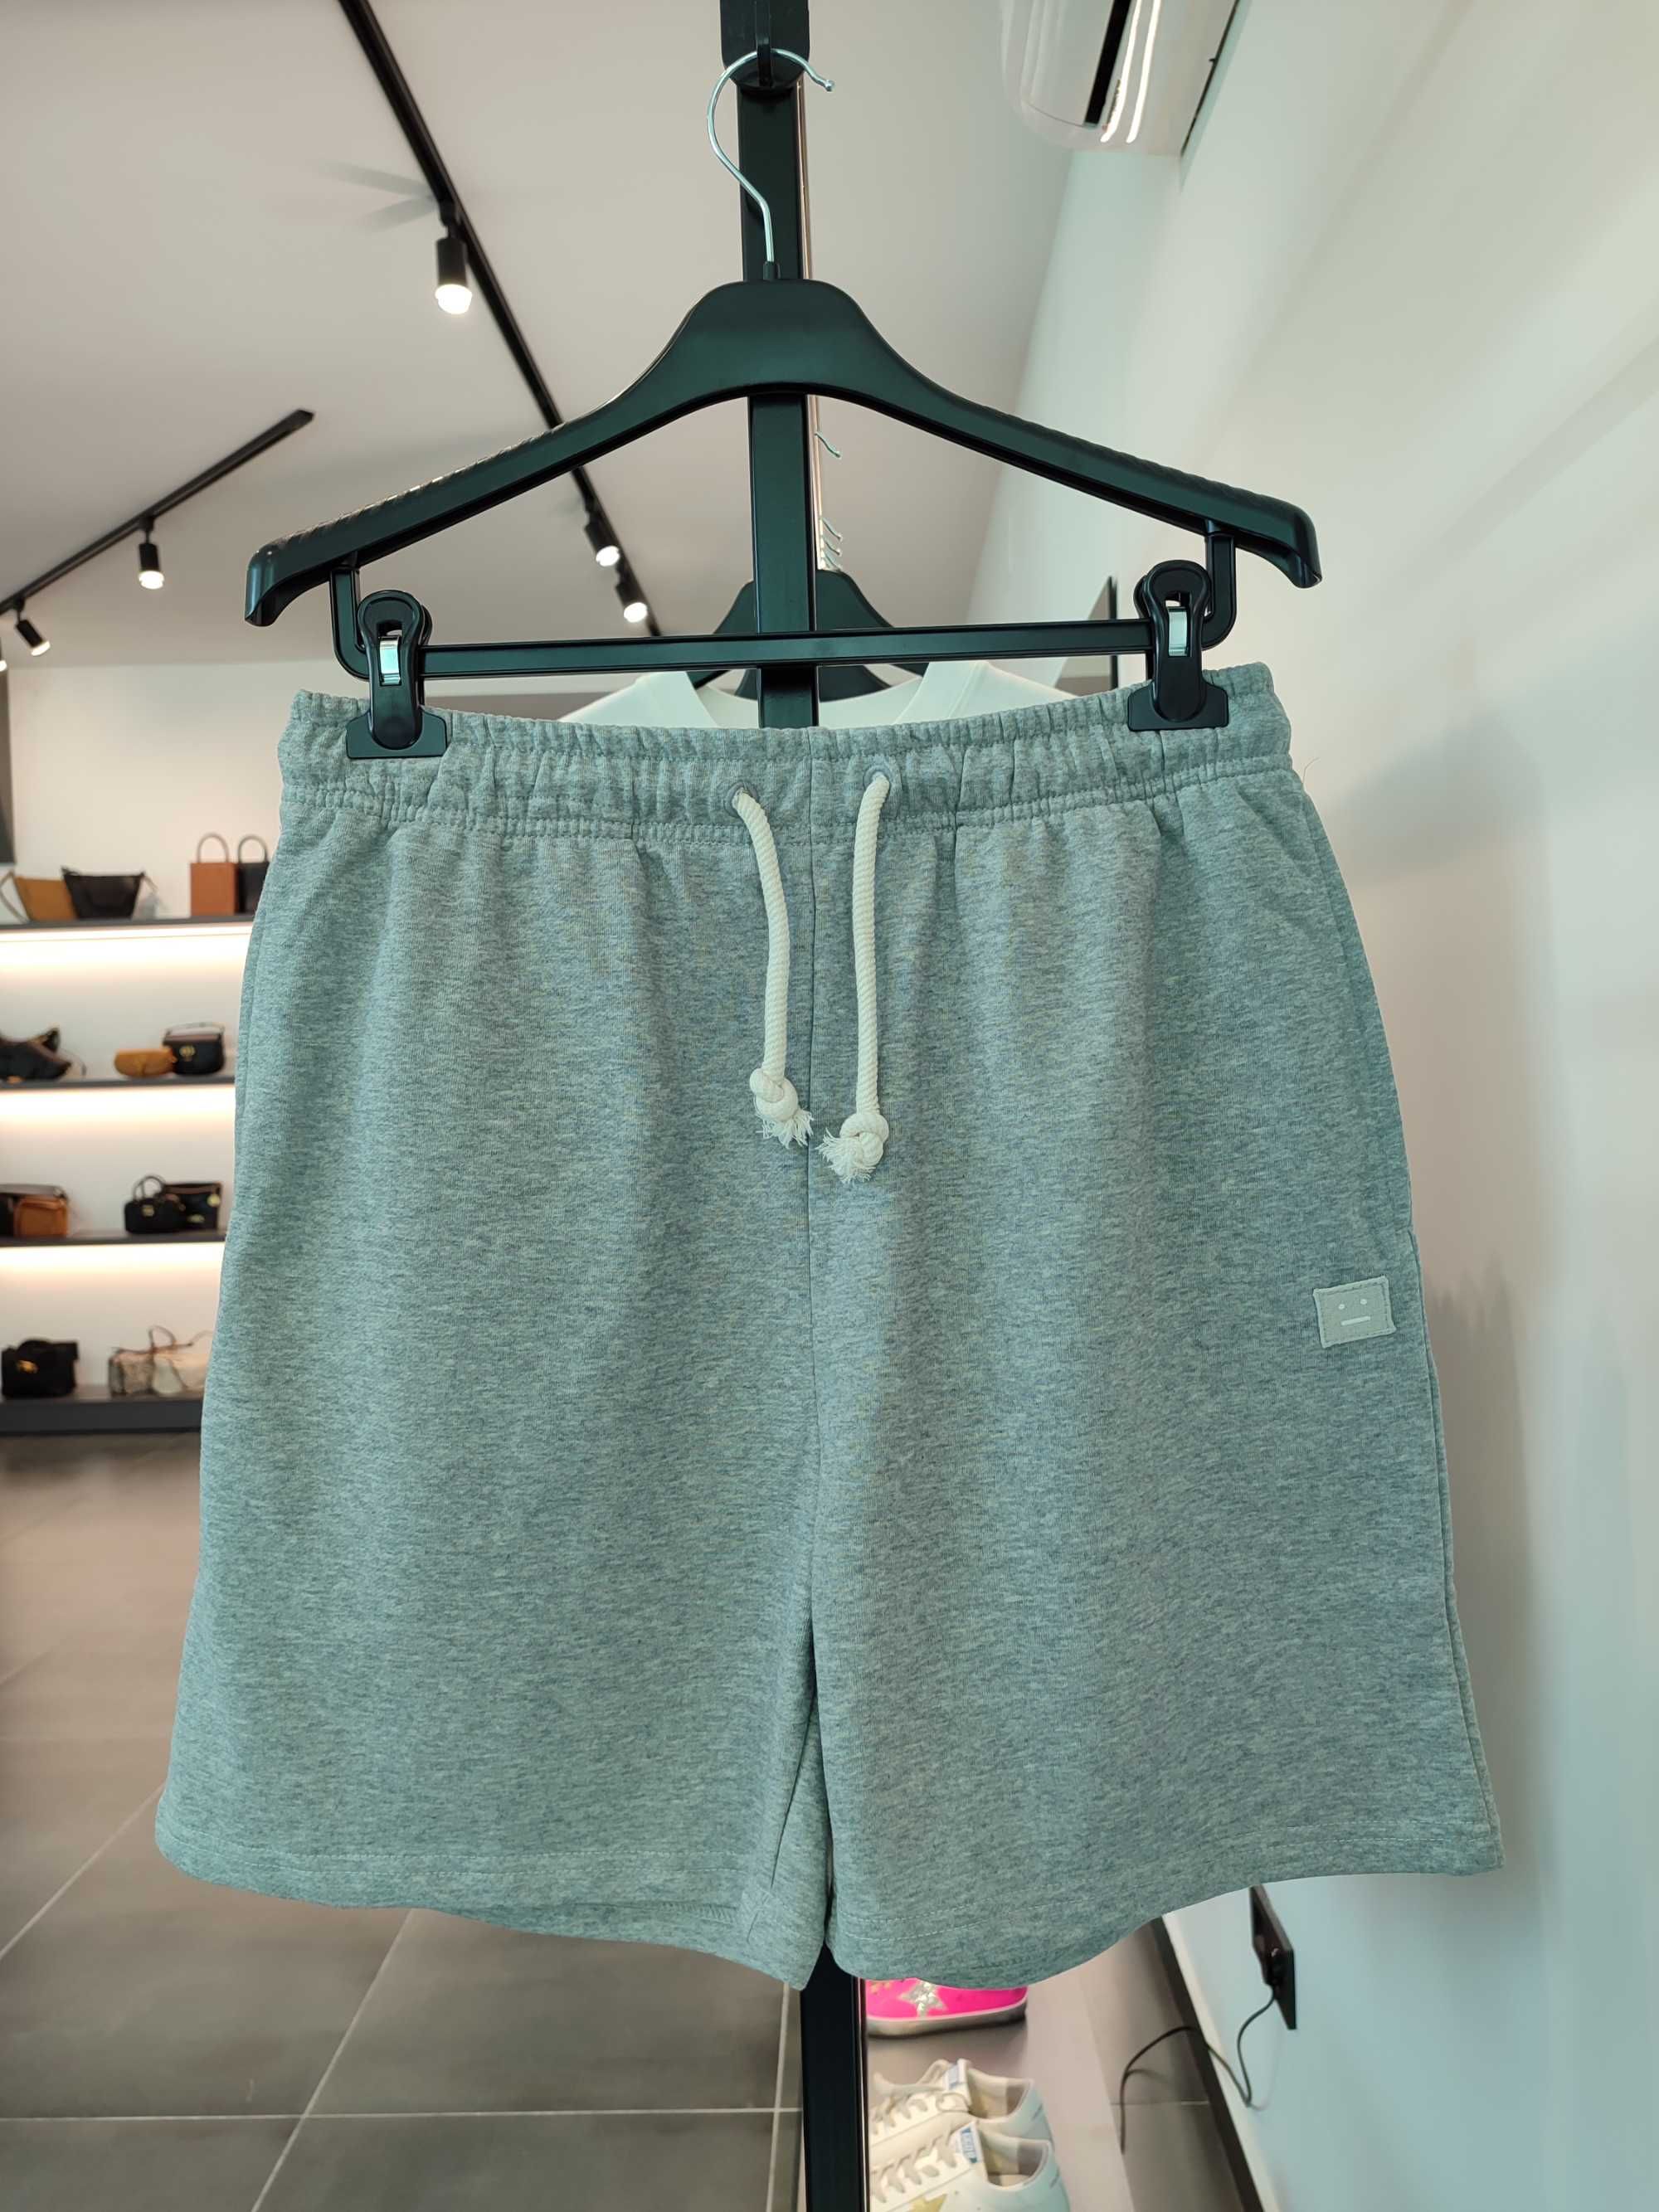 Шорти Acne Studios Fleece Shorts Light Grey Melange